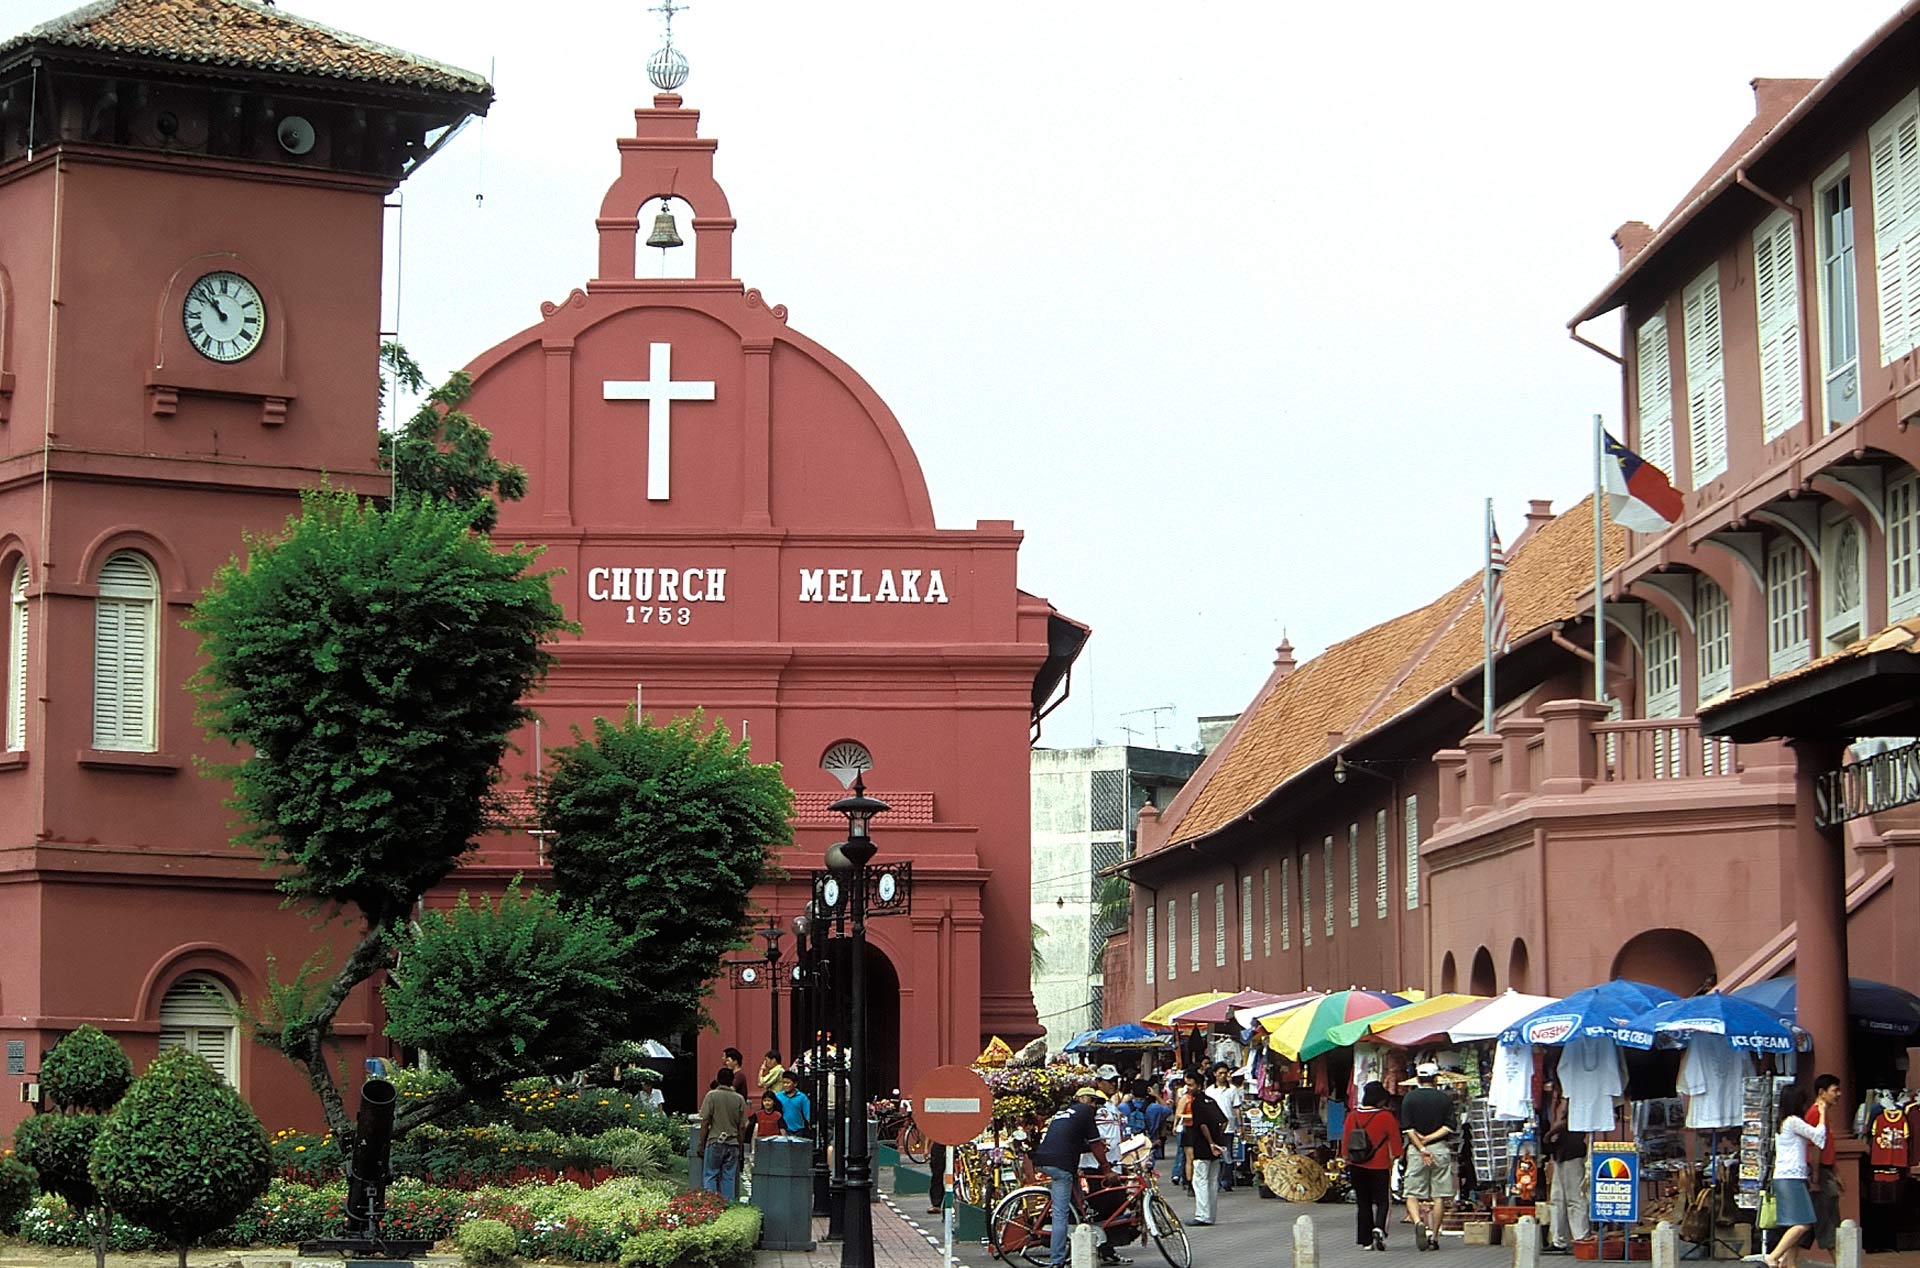 Christ Church and clock tower, Melaka, Malaysia